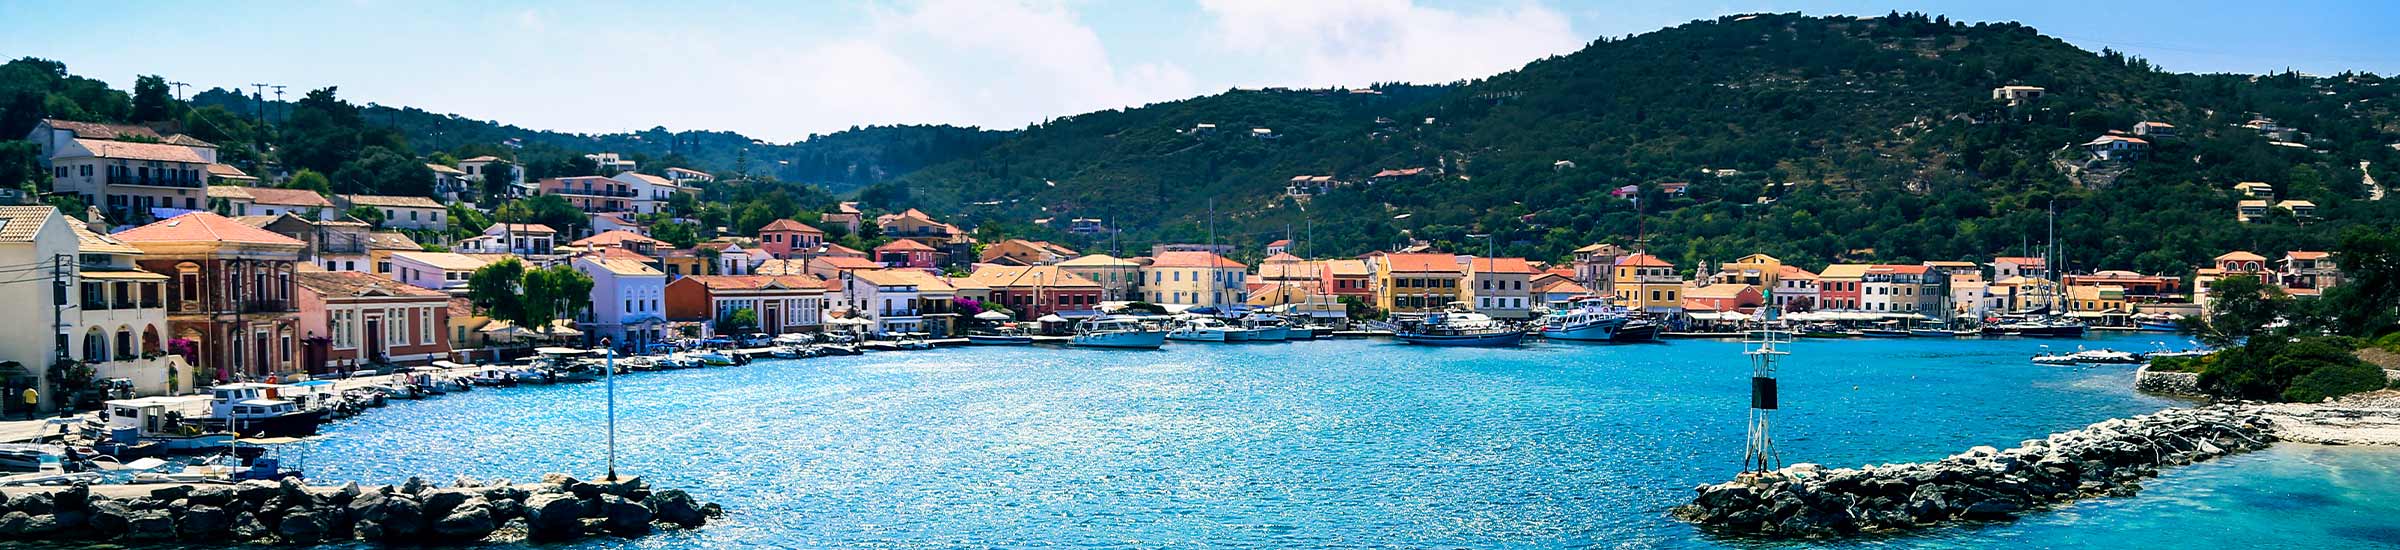 Blick auf den Hafen der griechischen Insel Paros